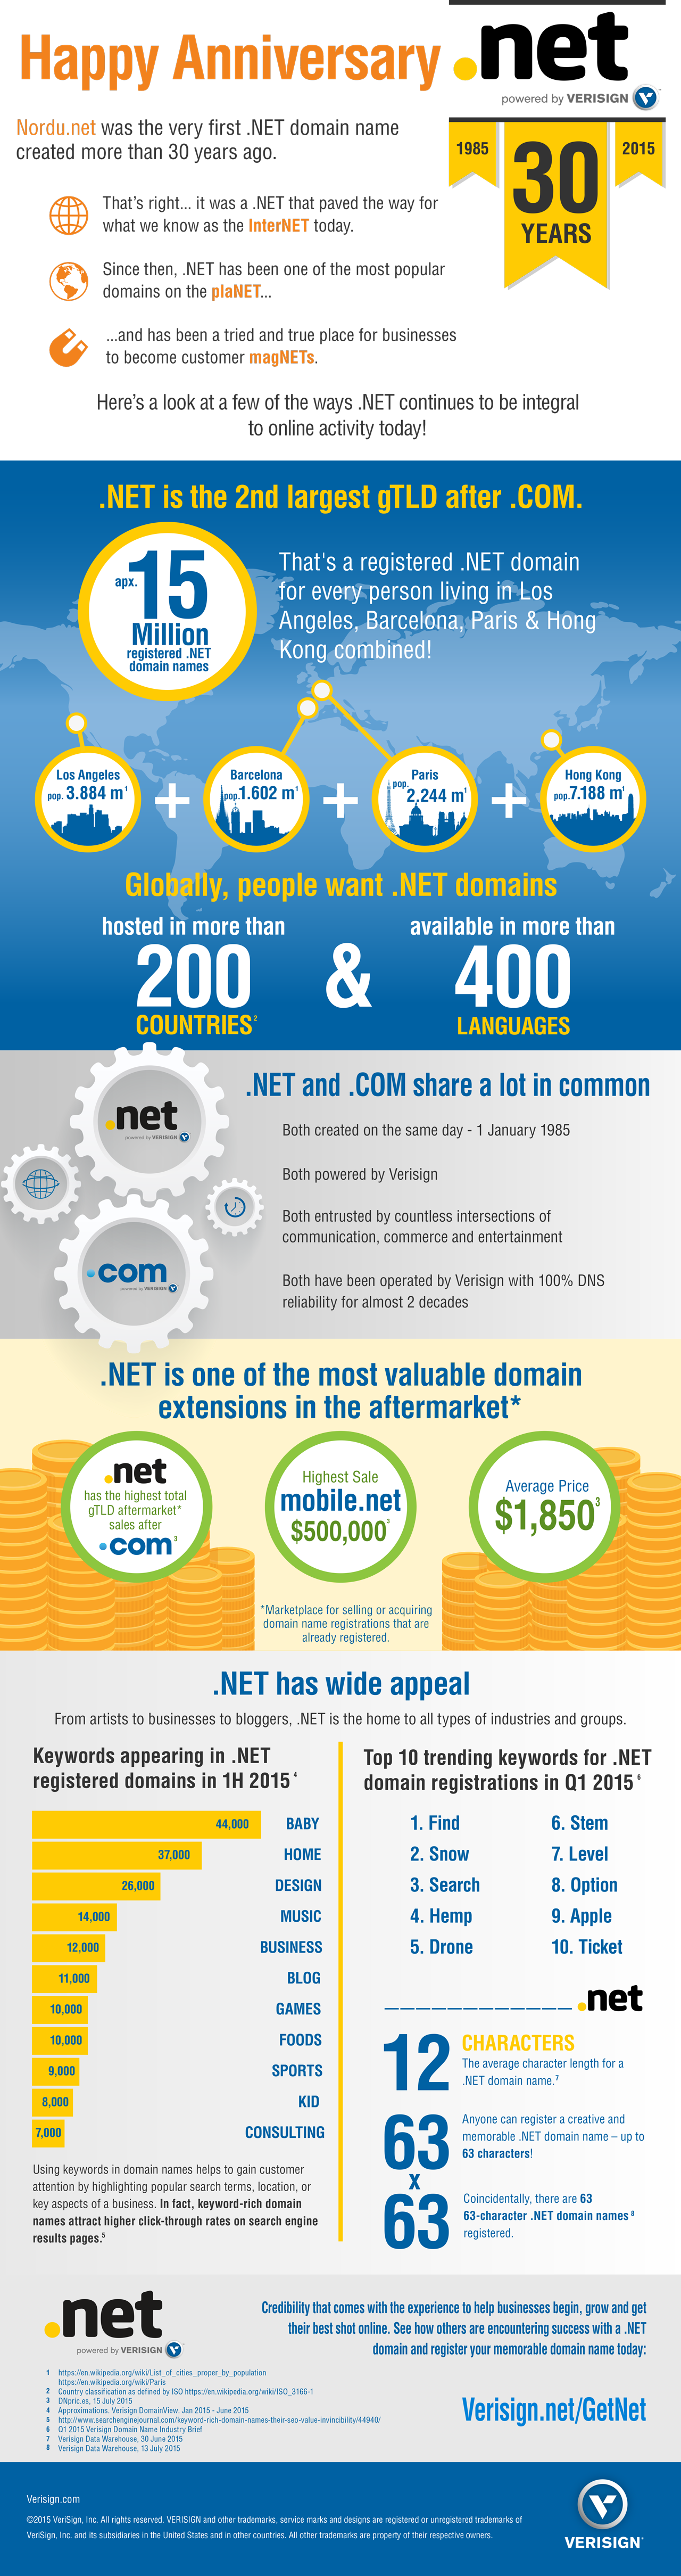 .net infographic